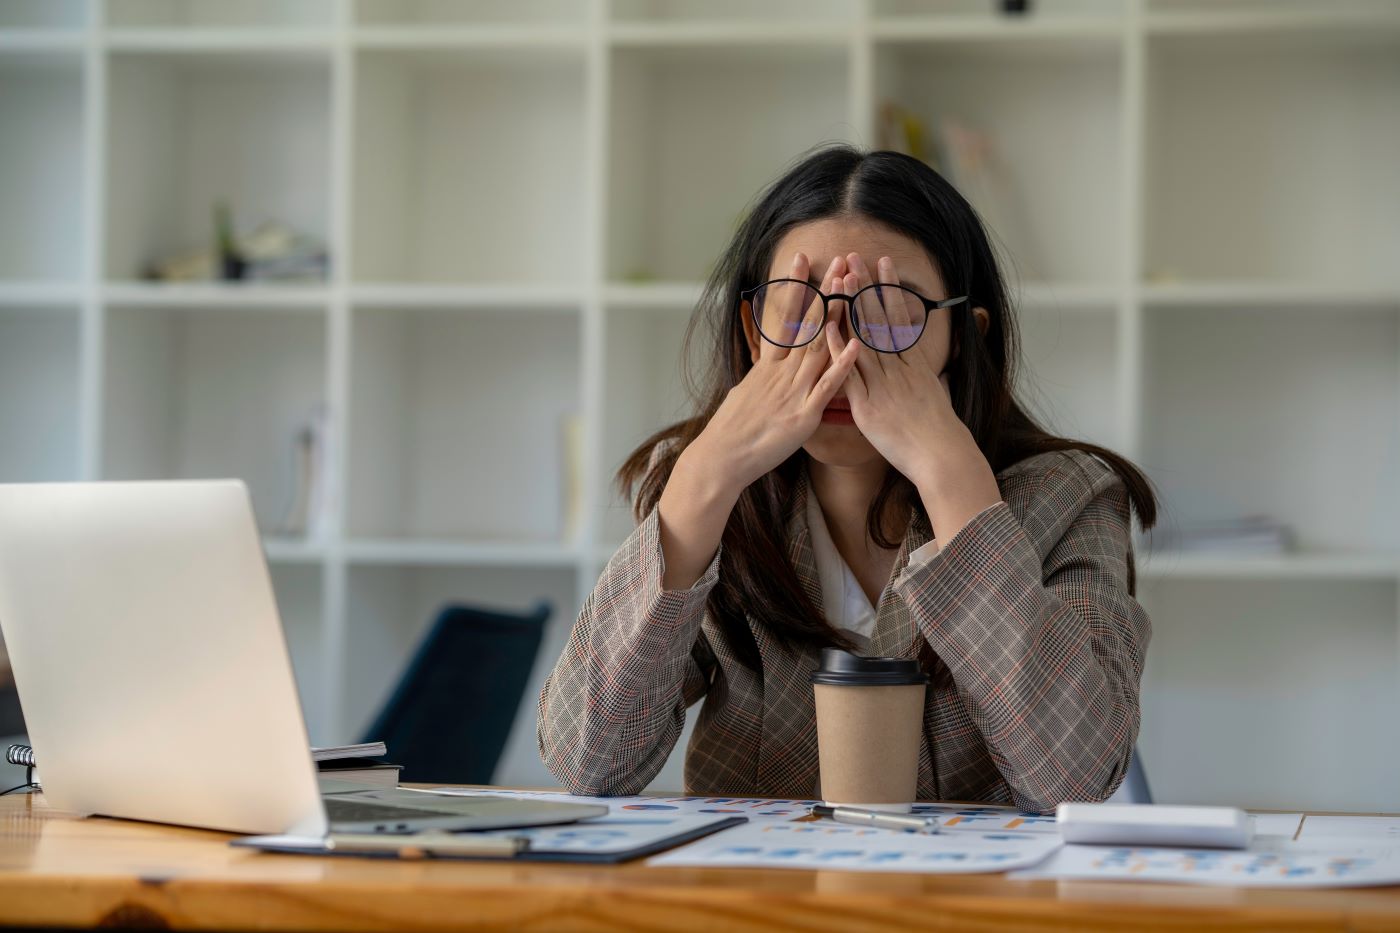  Aproape 50% dintre femeile care lucrează, mai stresate decât anul trecut 